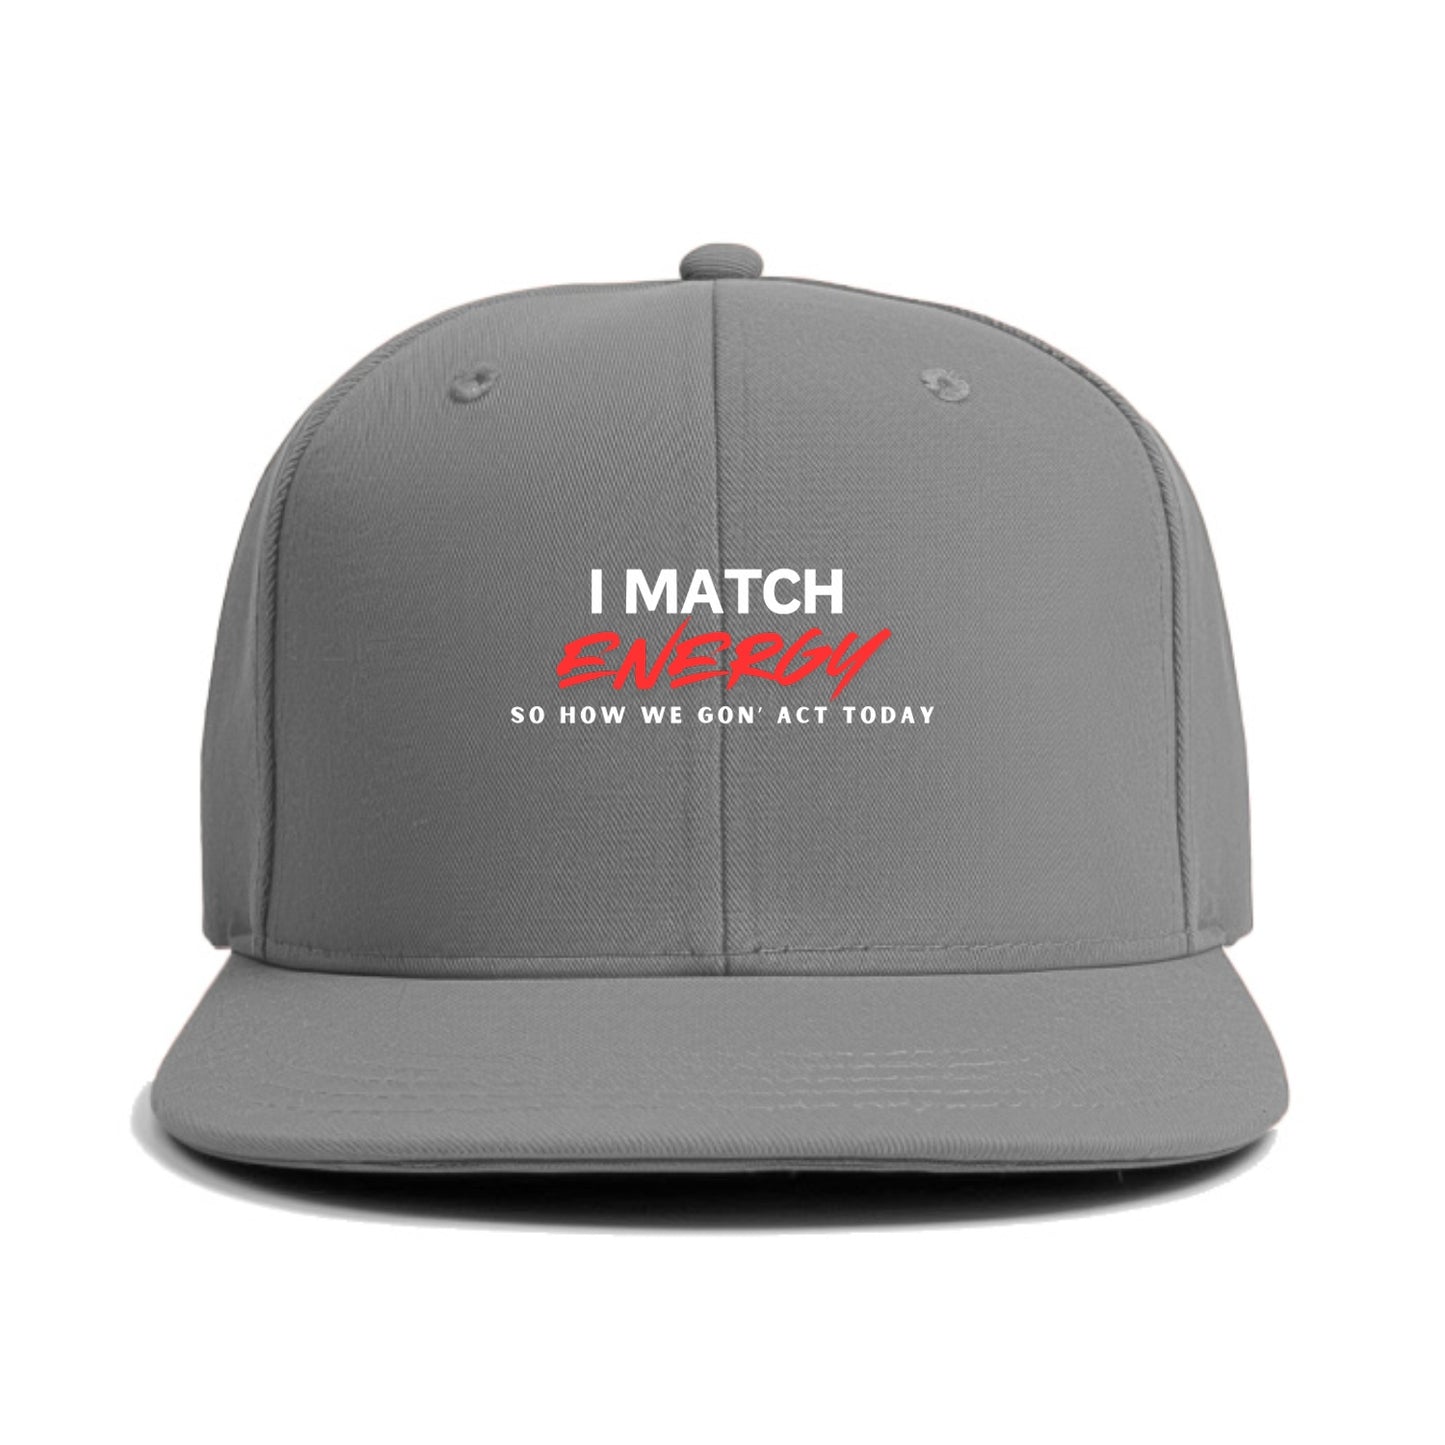 i match energy  Hat